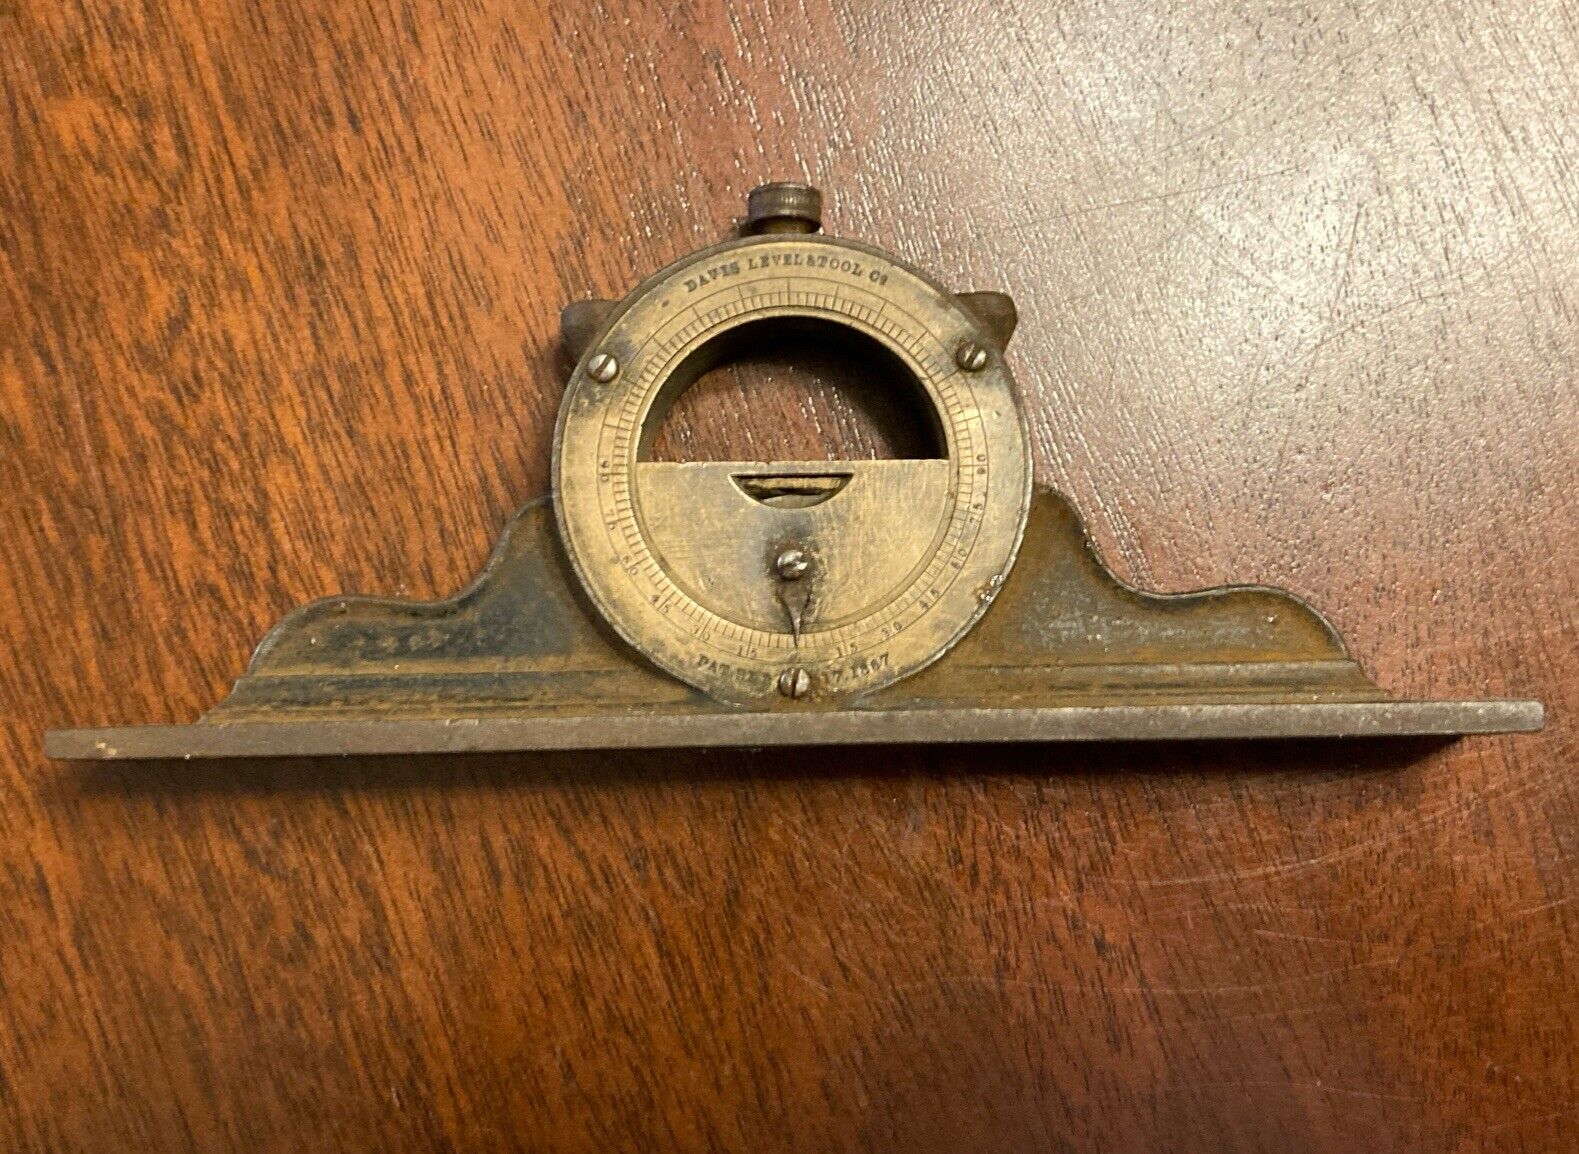 Antique Davis Level & Tool Co. Mantle Clock Type 6” Inclinometer, 1867 Patent